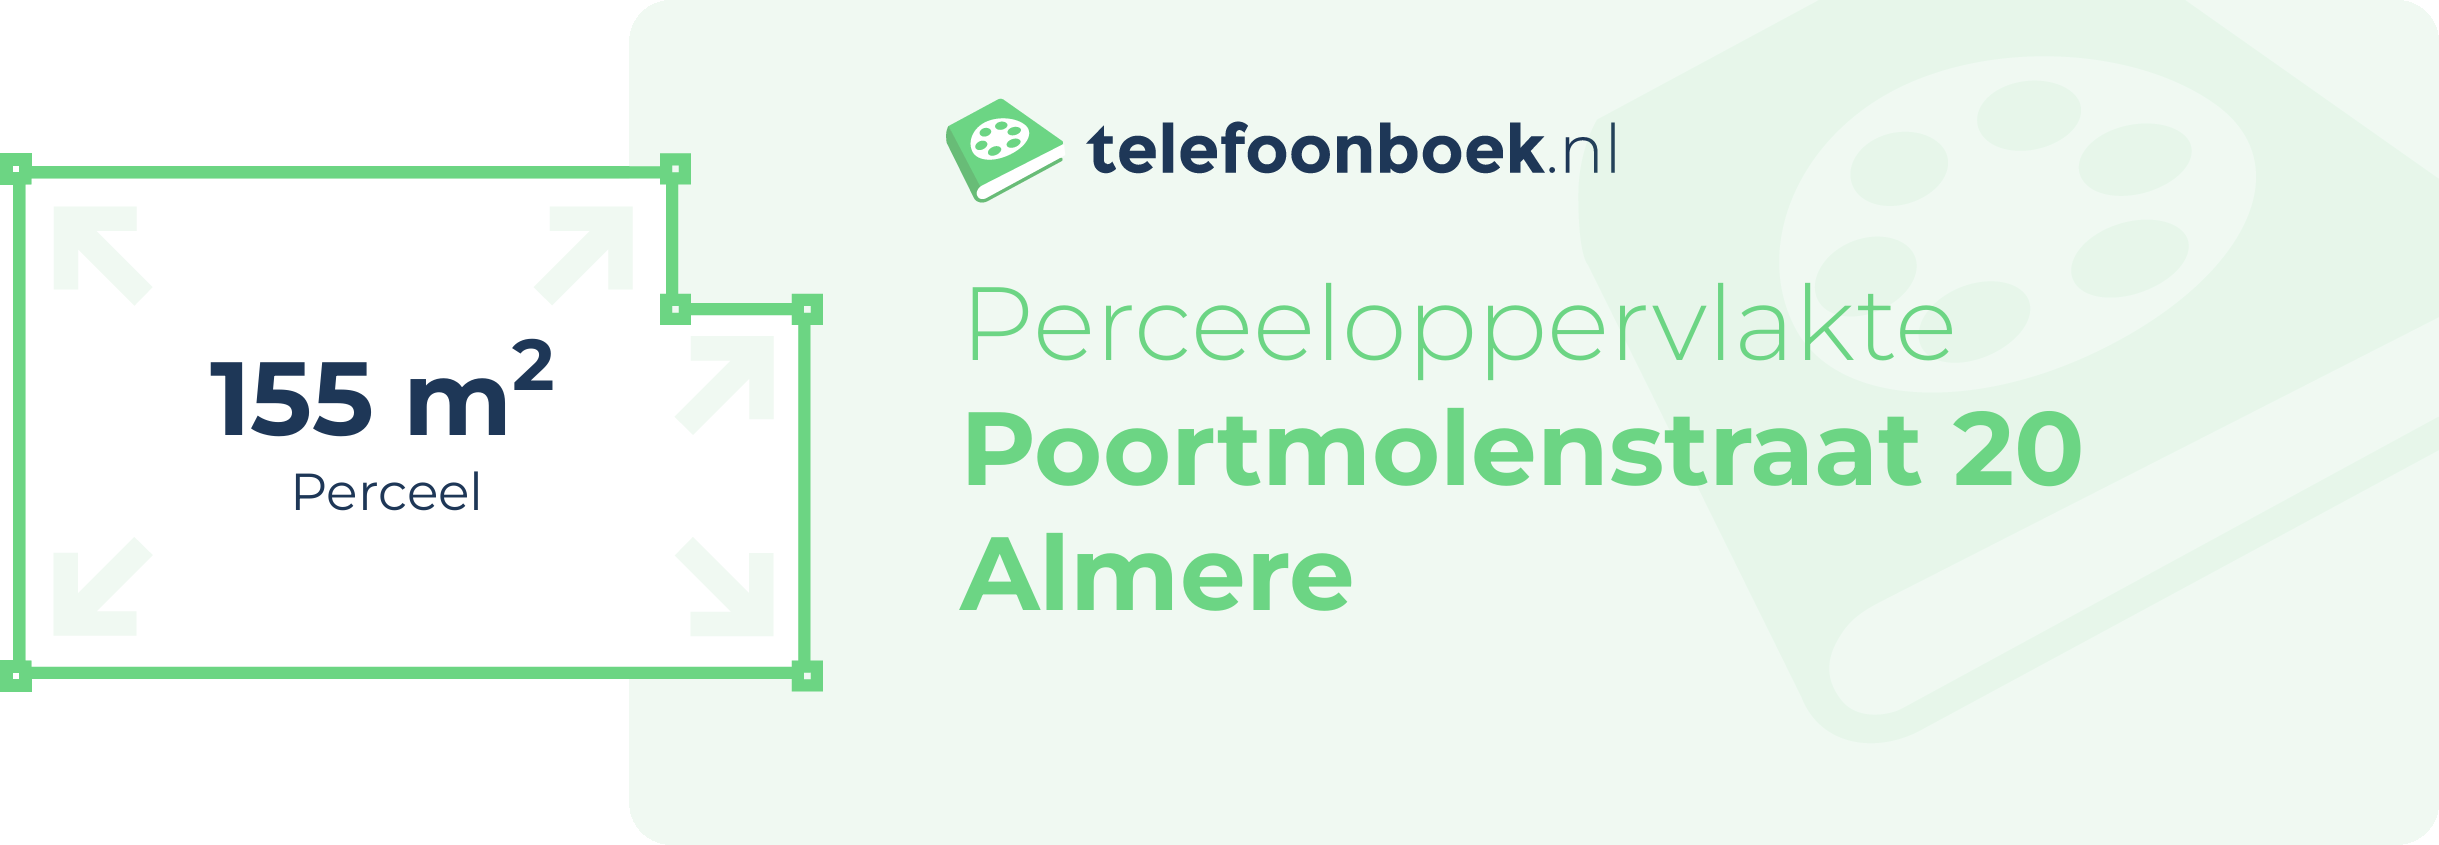 Perceeloppervlakte Poortmolenstraat 20 Almere